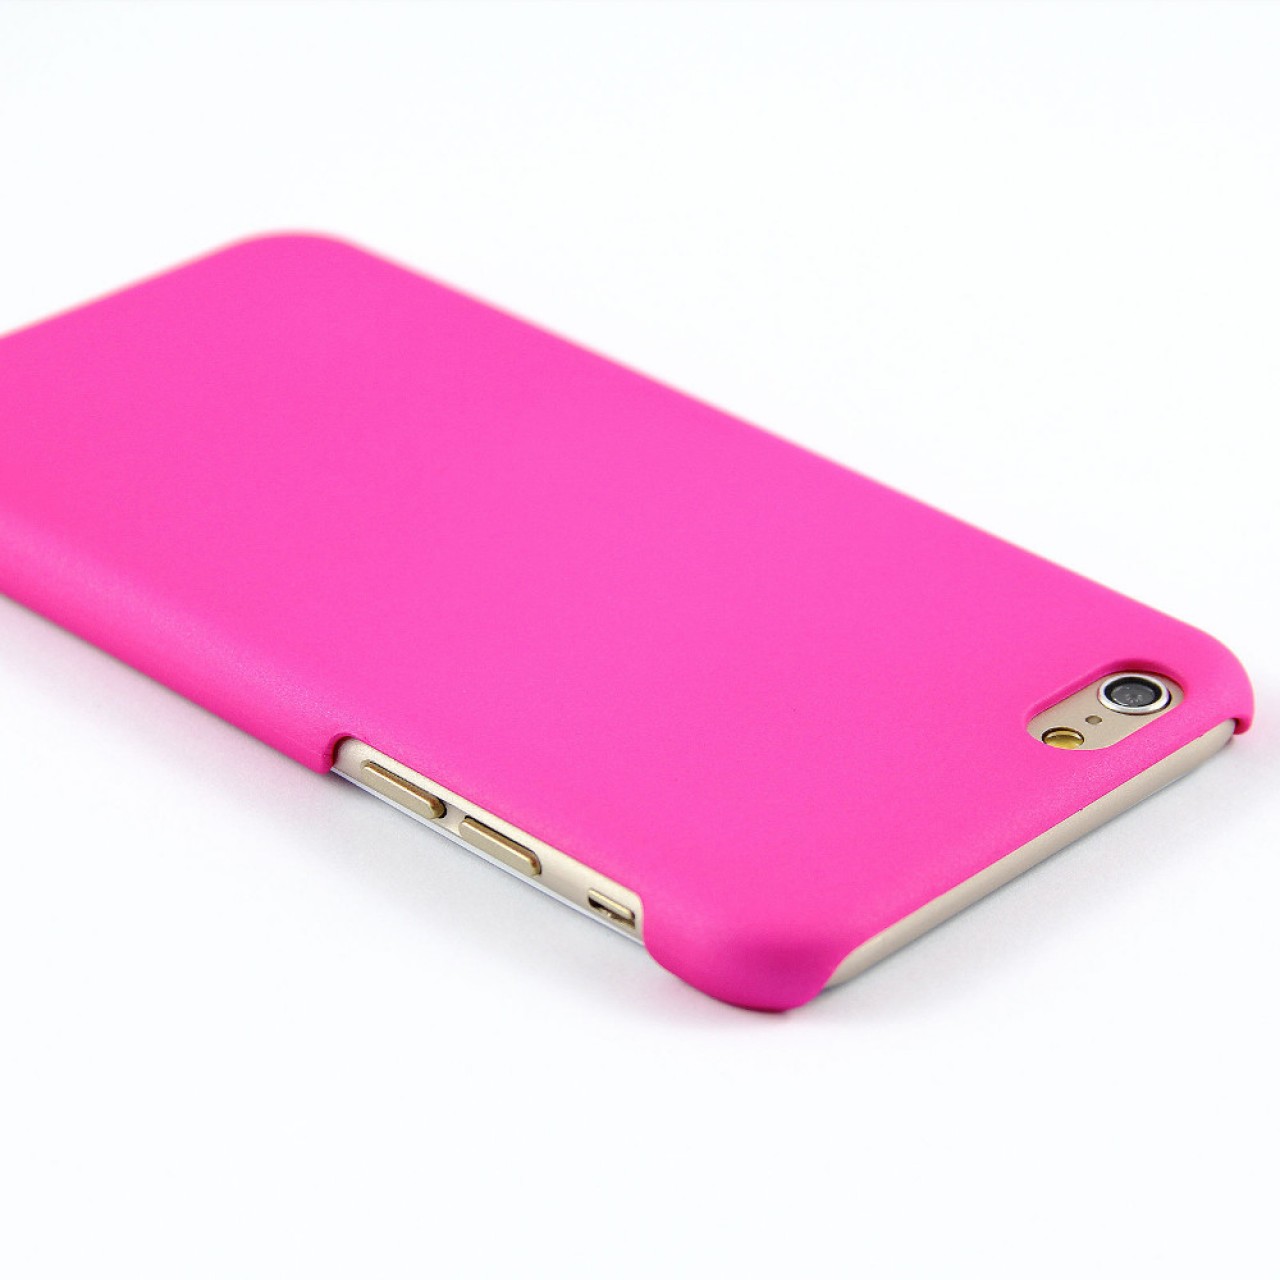 Θήκη iphone 5 / 5s / SE Σκληρή Πλαστική Frosted Ματ με επένδυση καουτσούκ - Ροζ - OEM